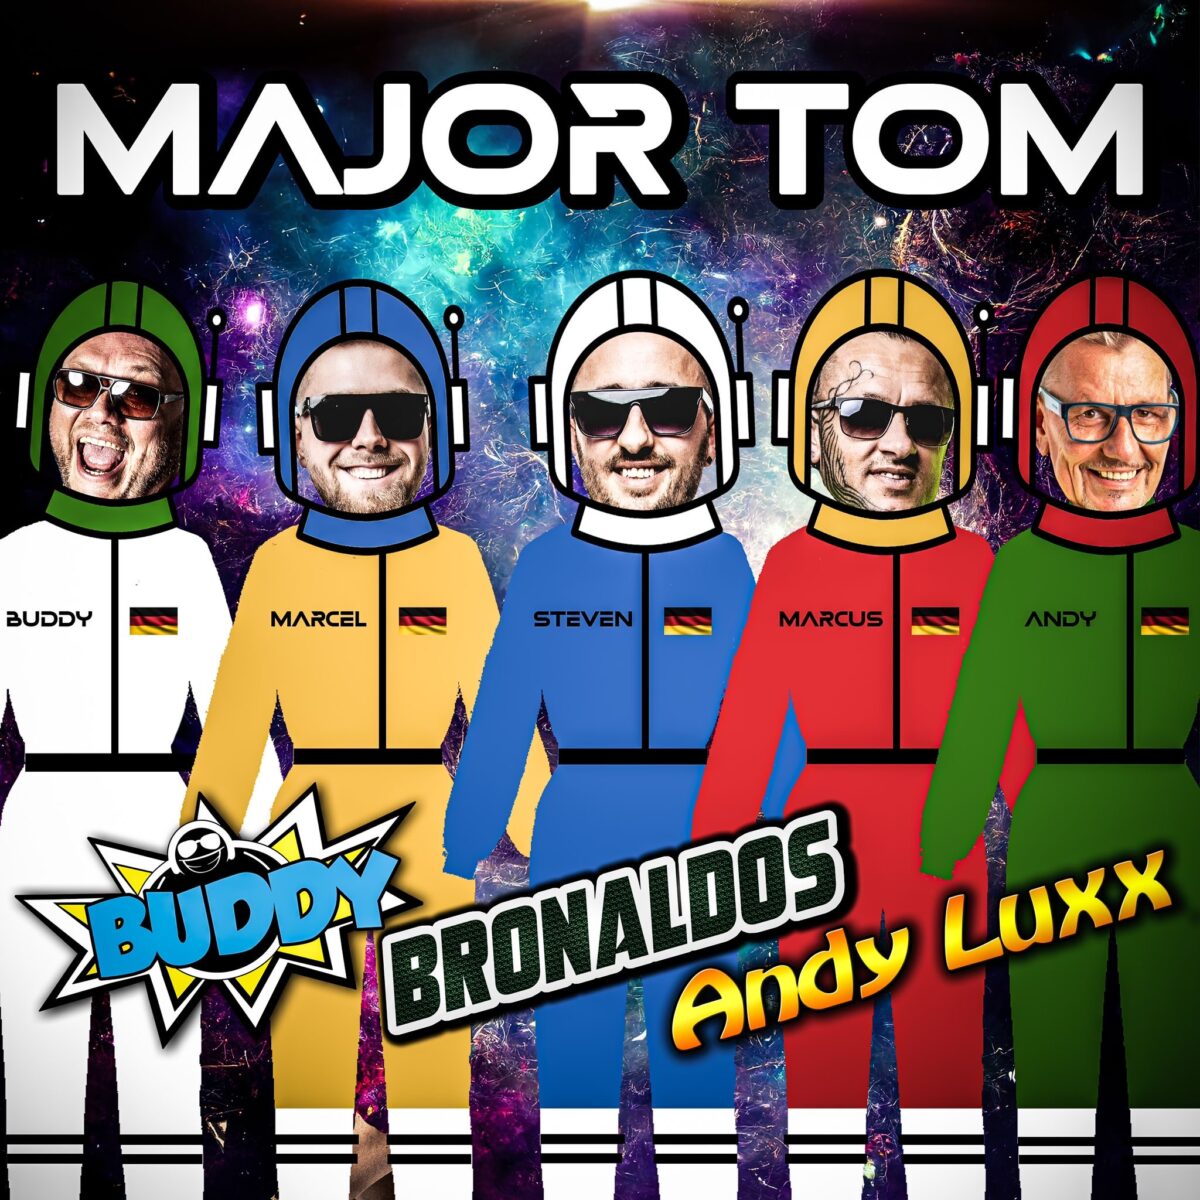 Ohrwurmgefahr! Buddy, Bronaldos & Andy Luxx mit „Major Tom“